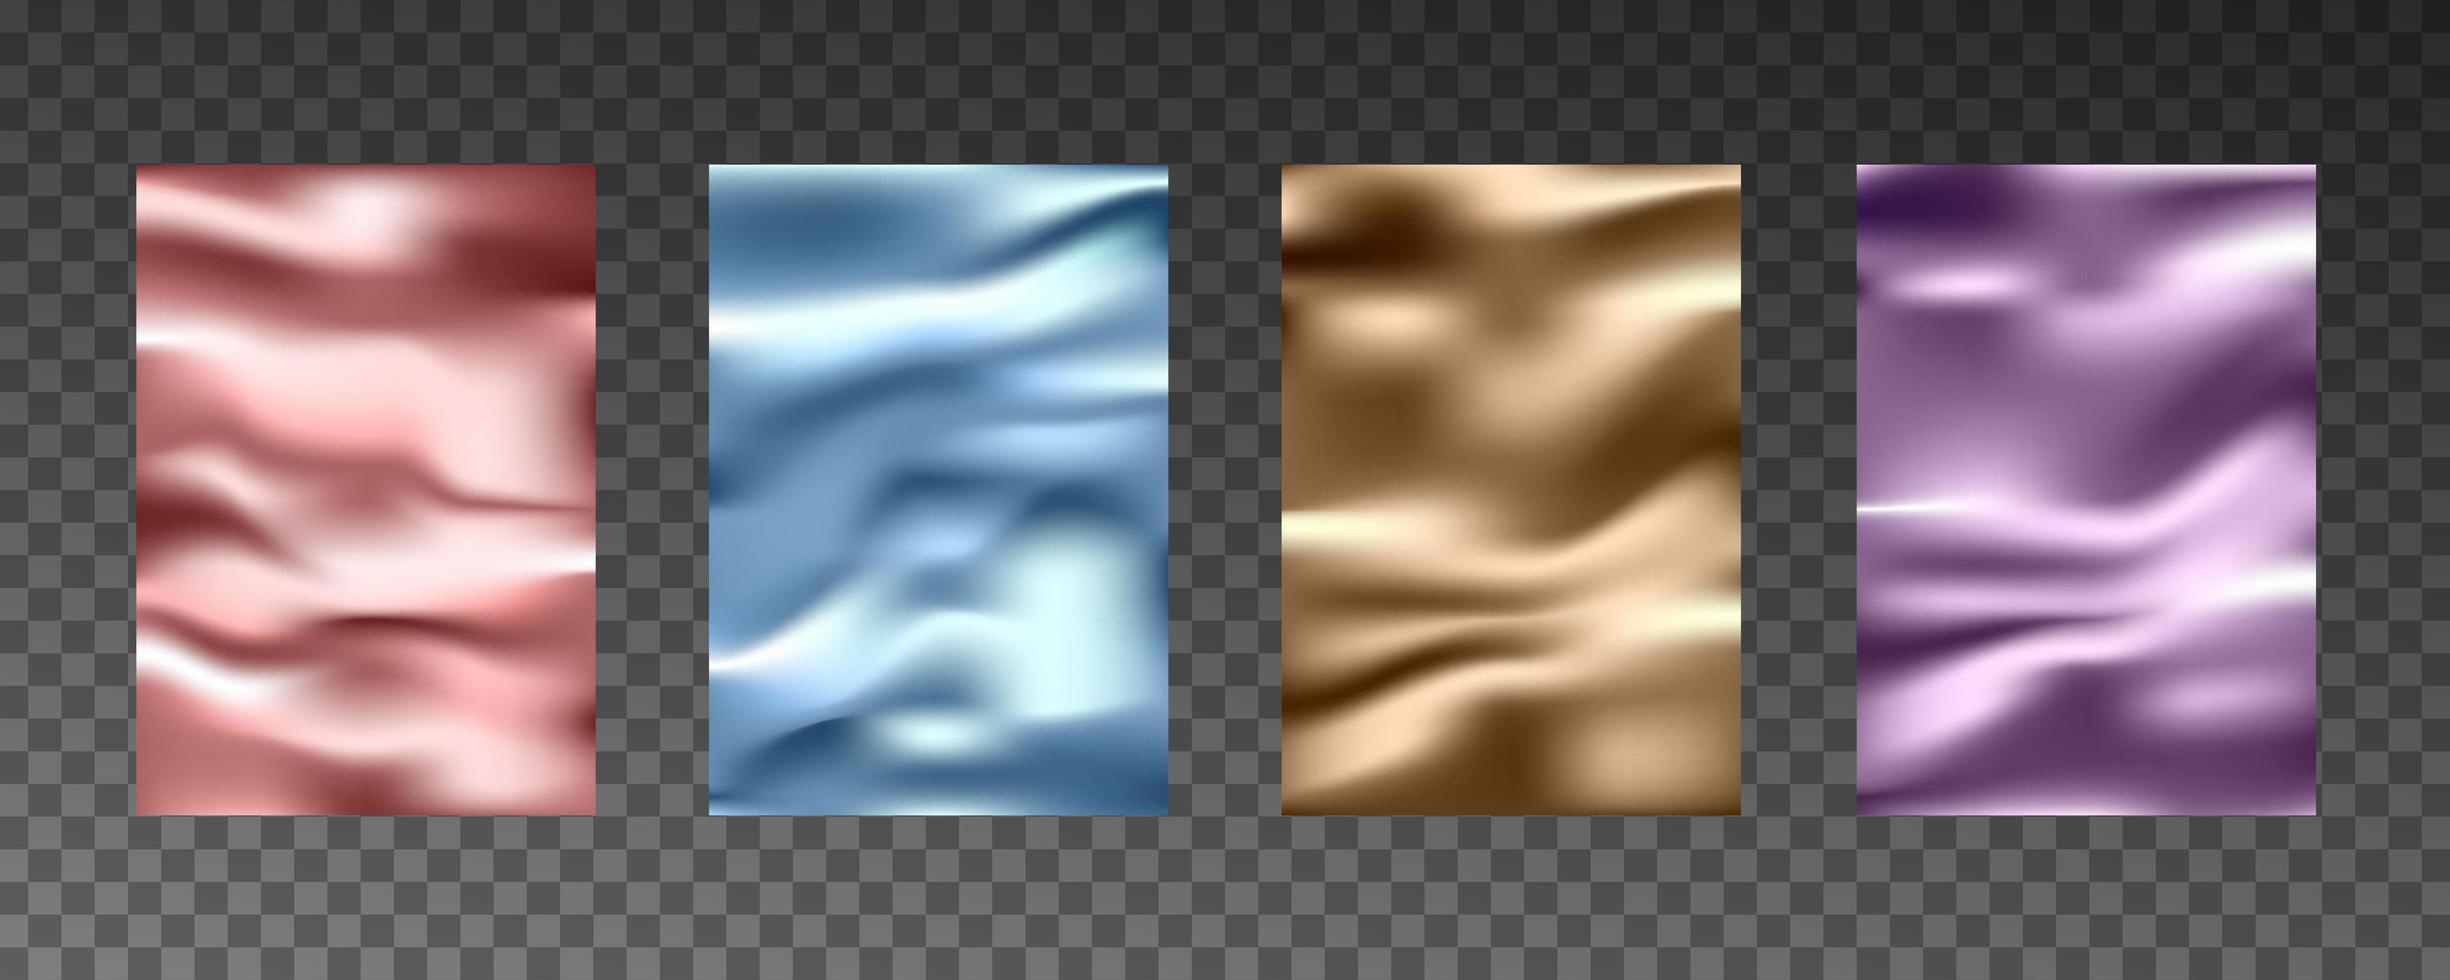 3d realistic textures of gold foil, silk texture, paper, plastic film. vector